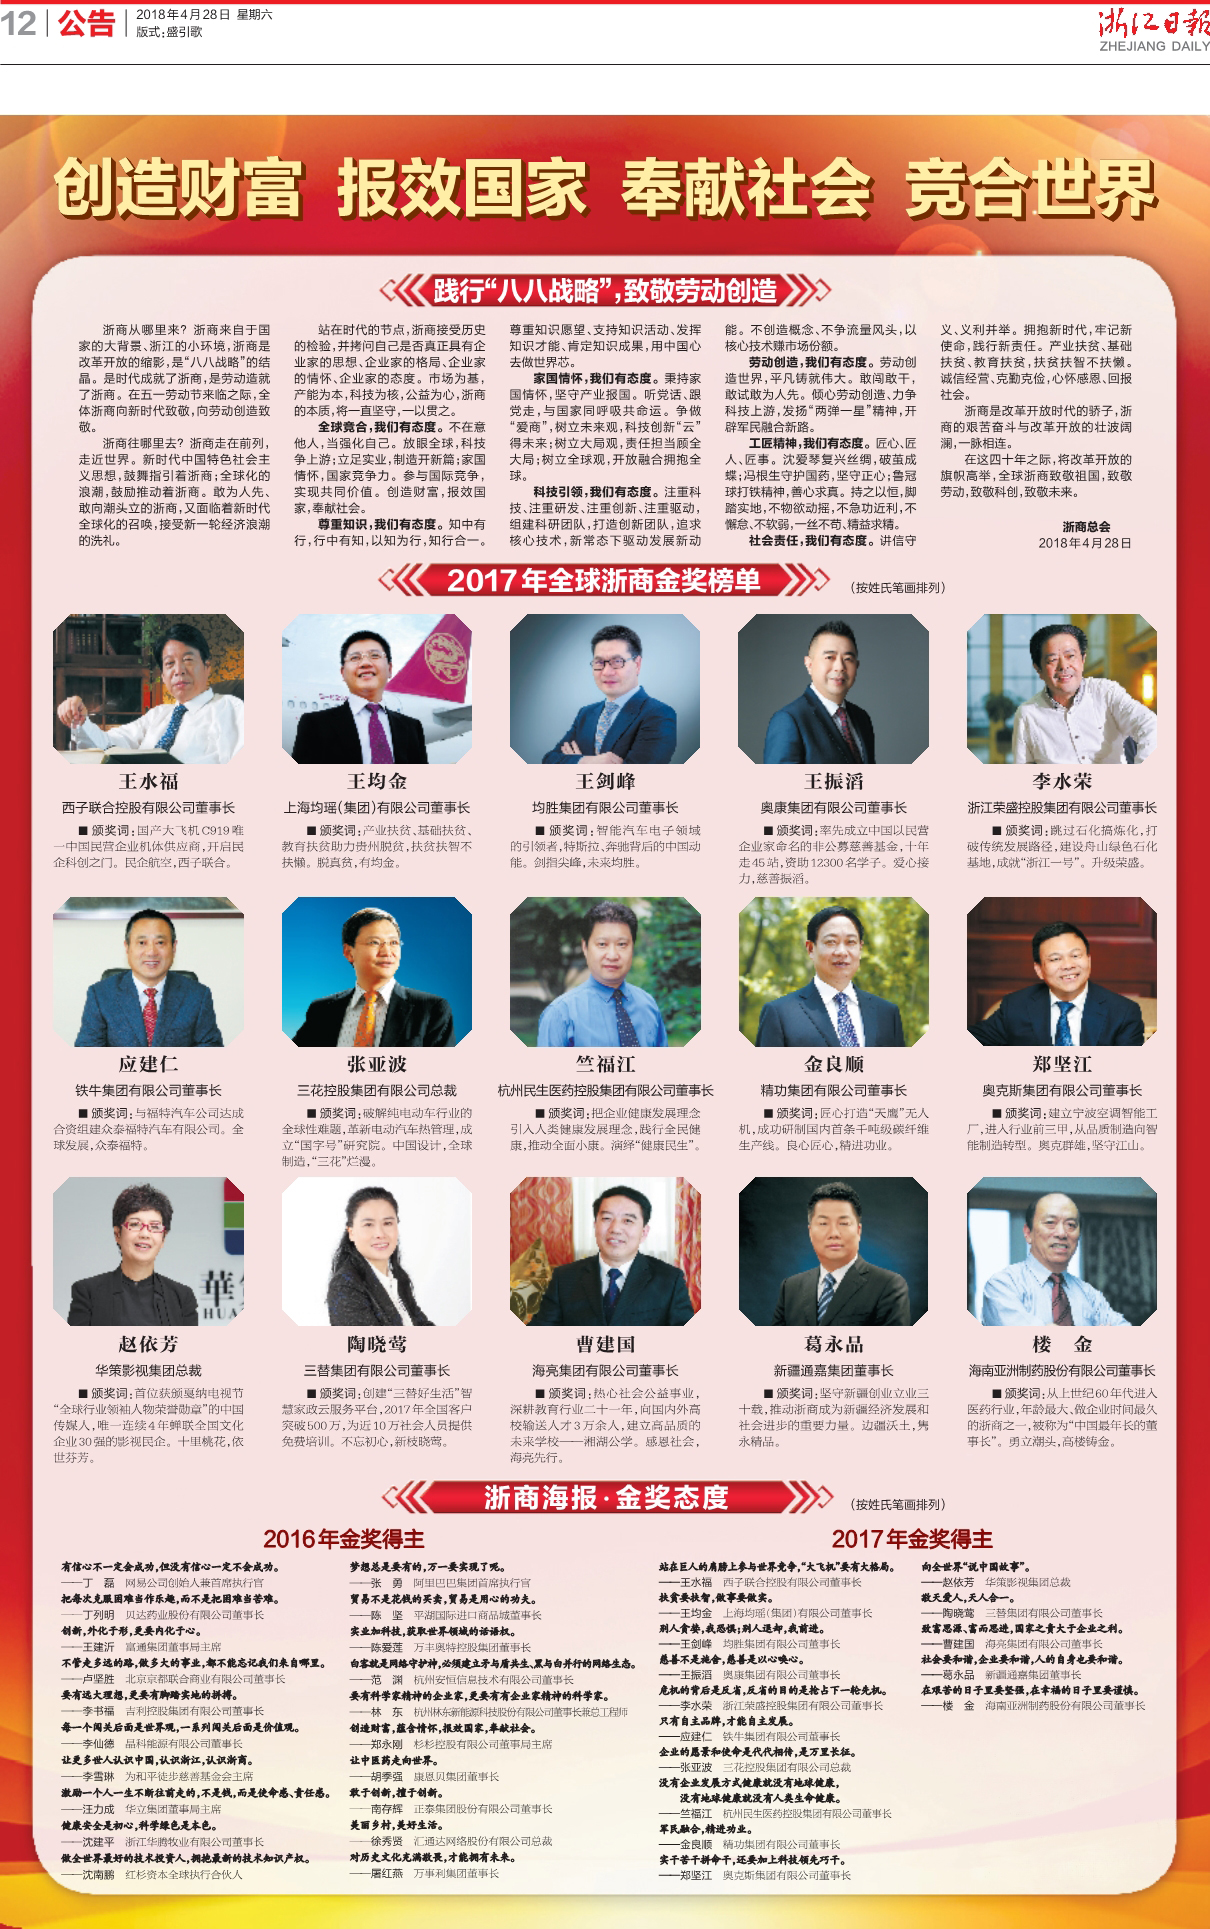 2018年4月28日《浙江日報》關於2018金獎得主和金獎態度的版面